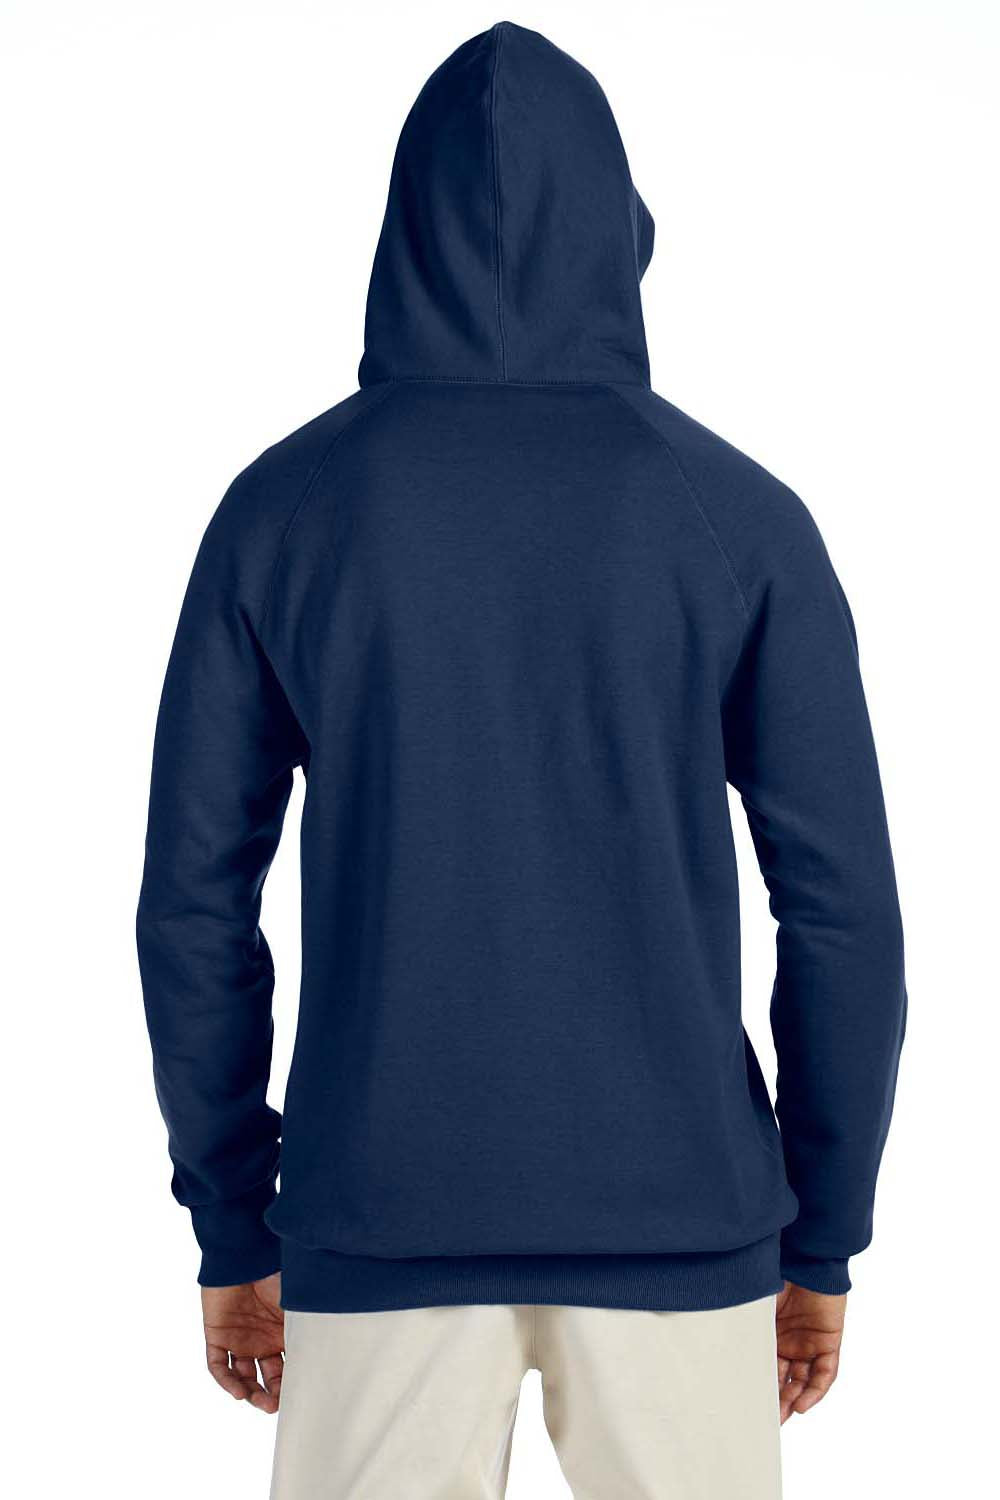 Hanes N270 Mens Nano Fleece Hooded Sweatshirt Hoodie Vintage Navy Blue Back